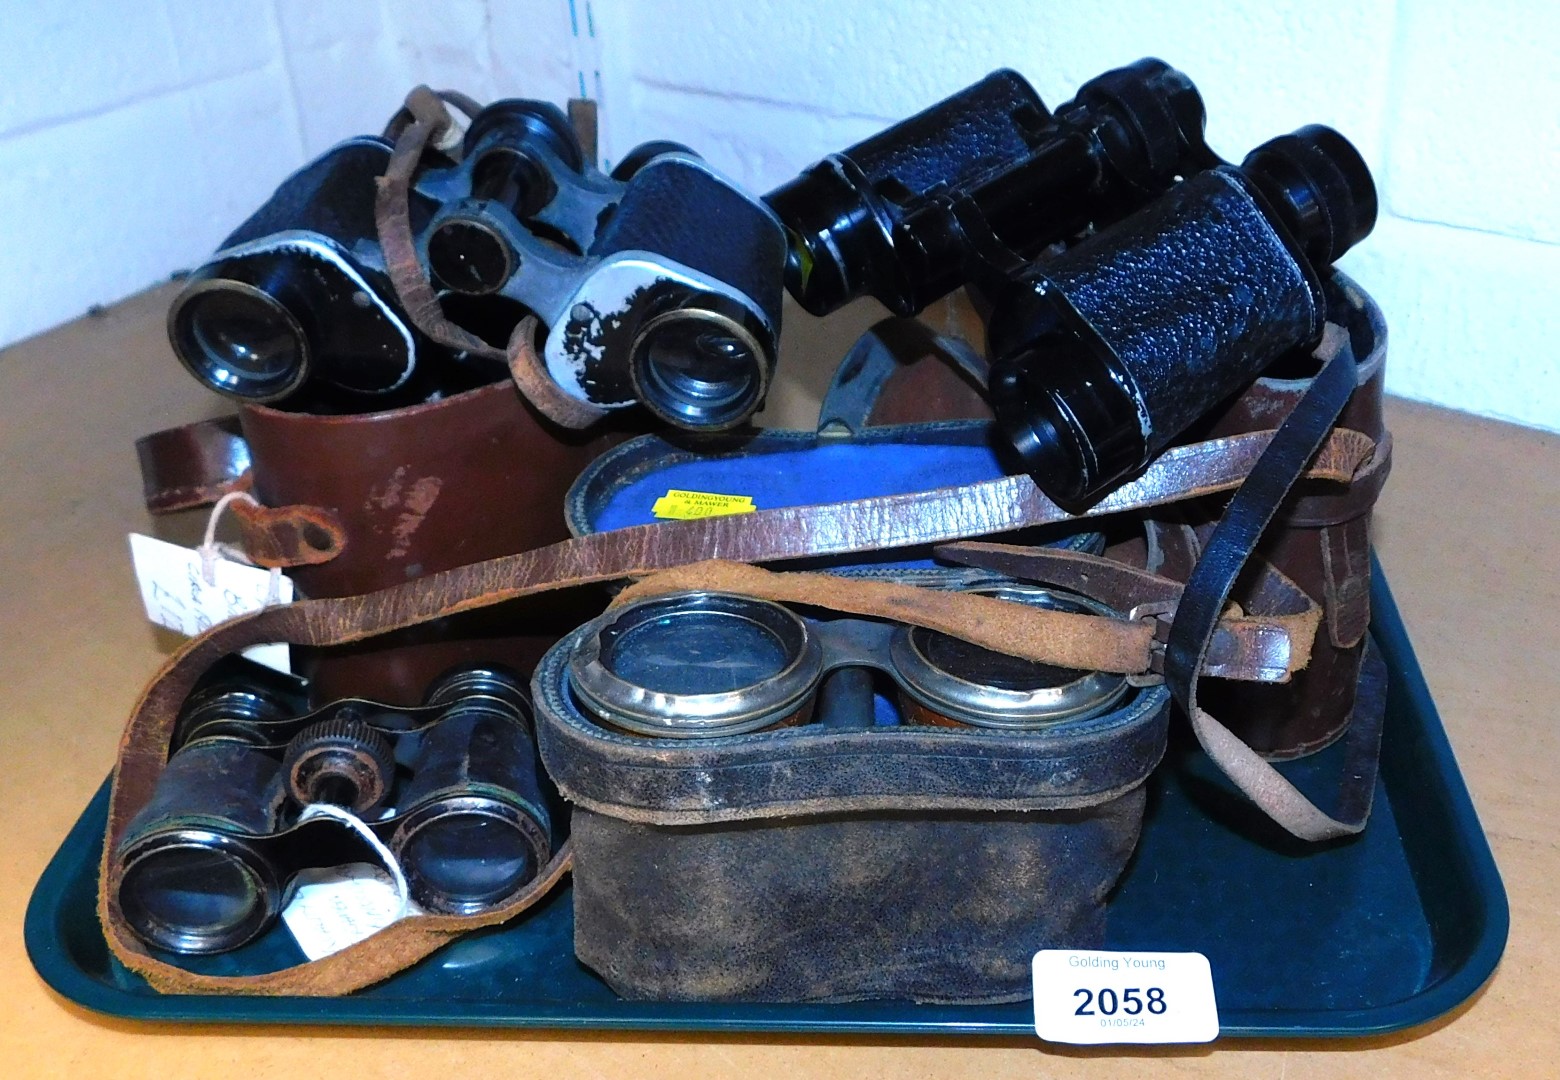 Two pairs of binoculars, opera glasses etc. (1 tray)